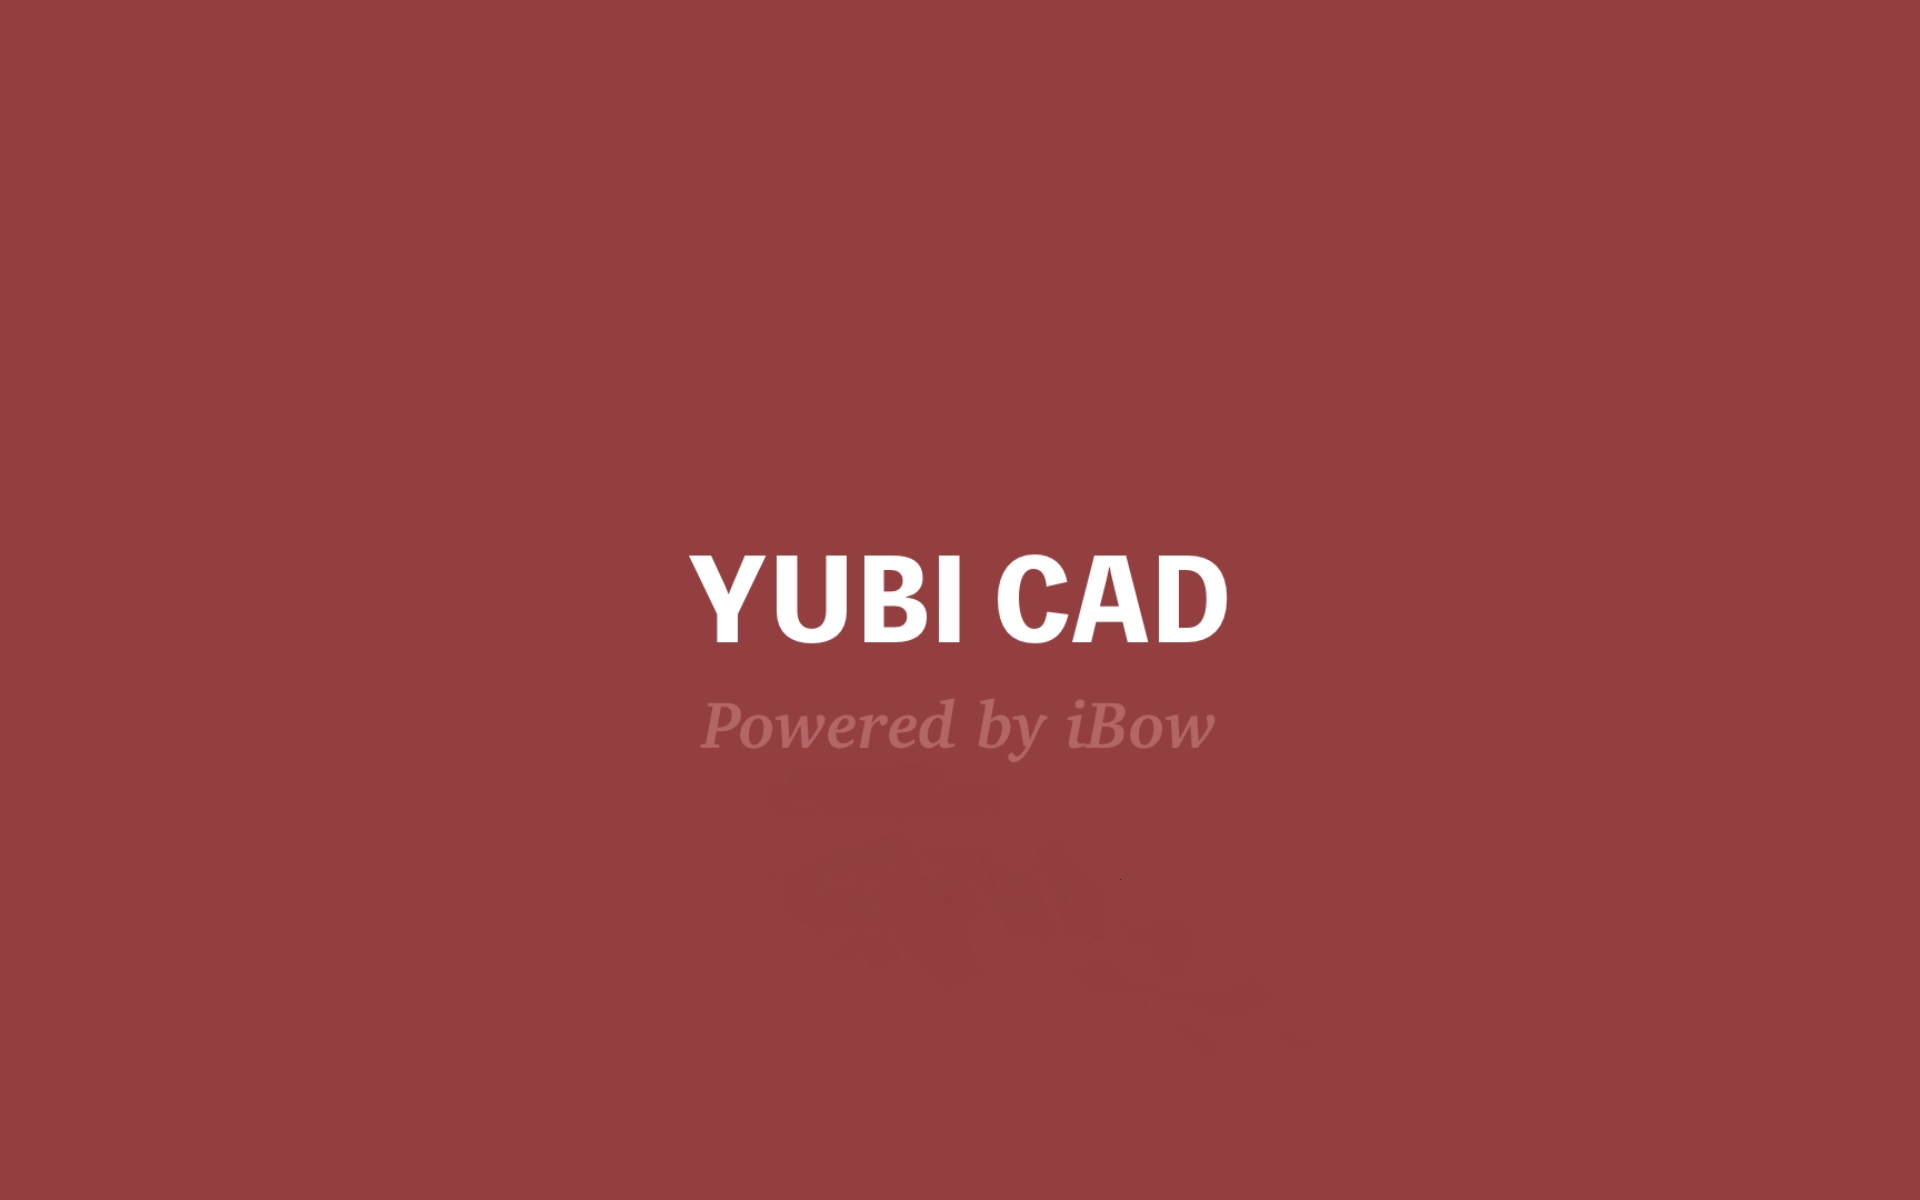 スマホ/タブレットで操作できるオリジナルアプリ「YUBICAD」